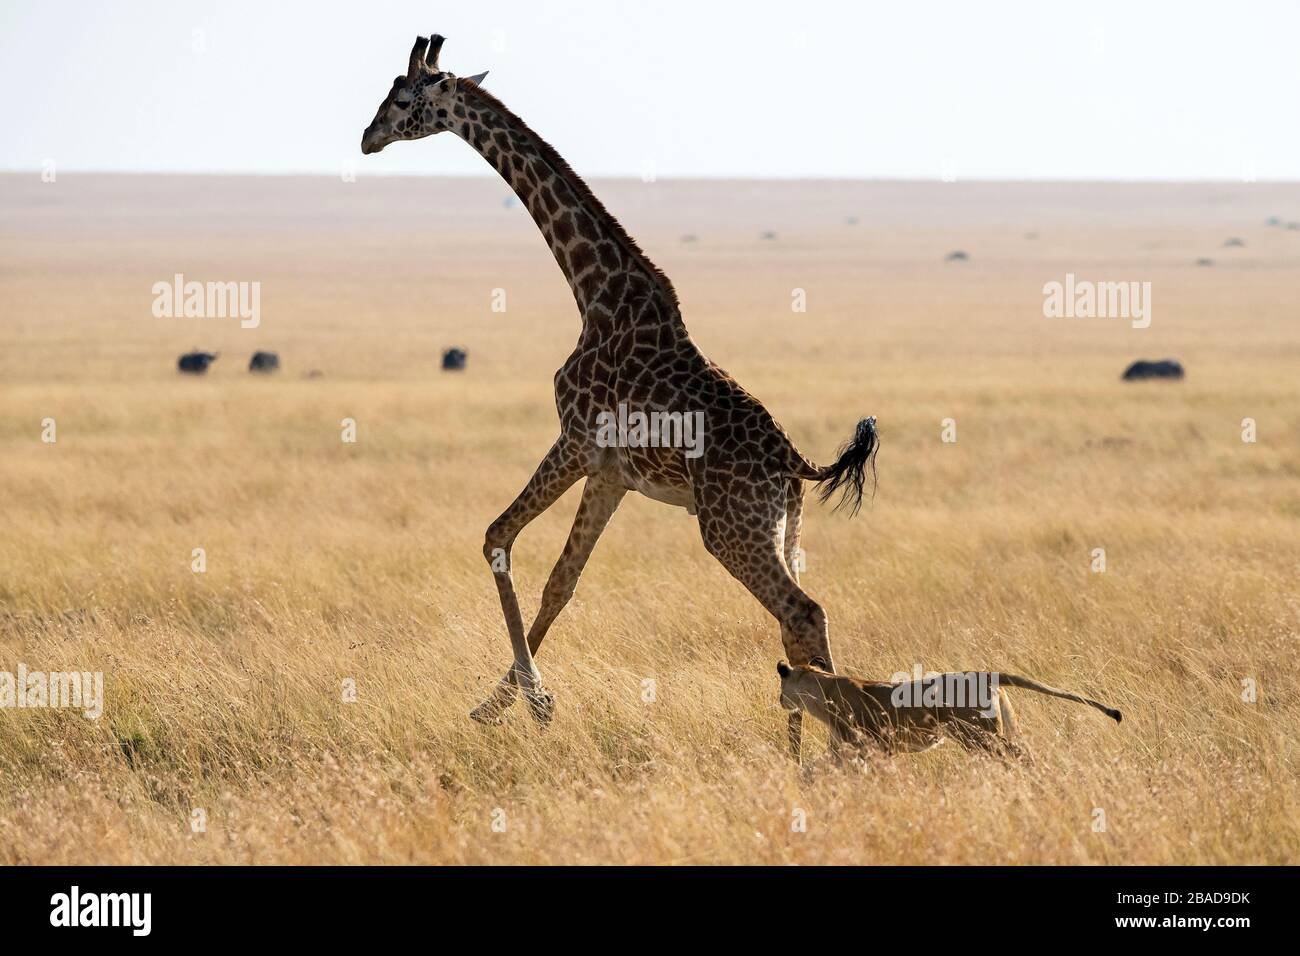 L'image du lion africain (Panthera leo) chassant la girafe dans le parc national de Masai mara, au Kenya Banque D'Images